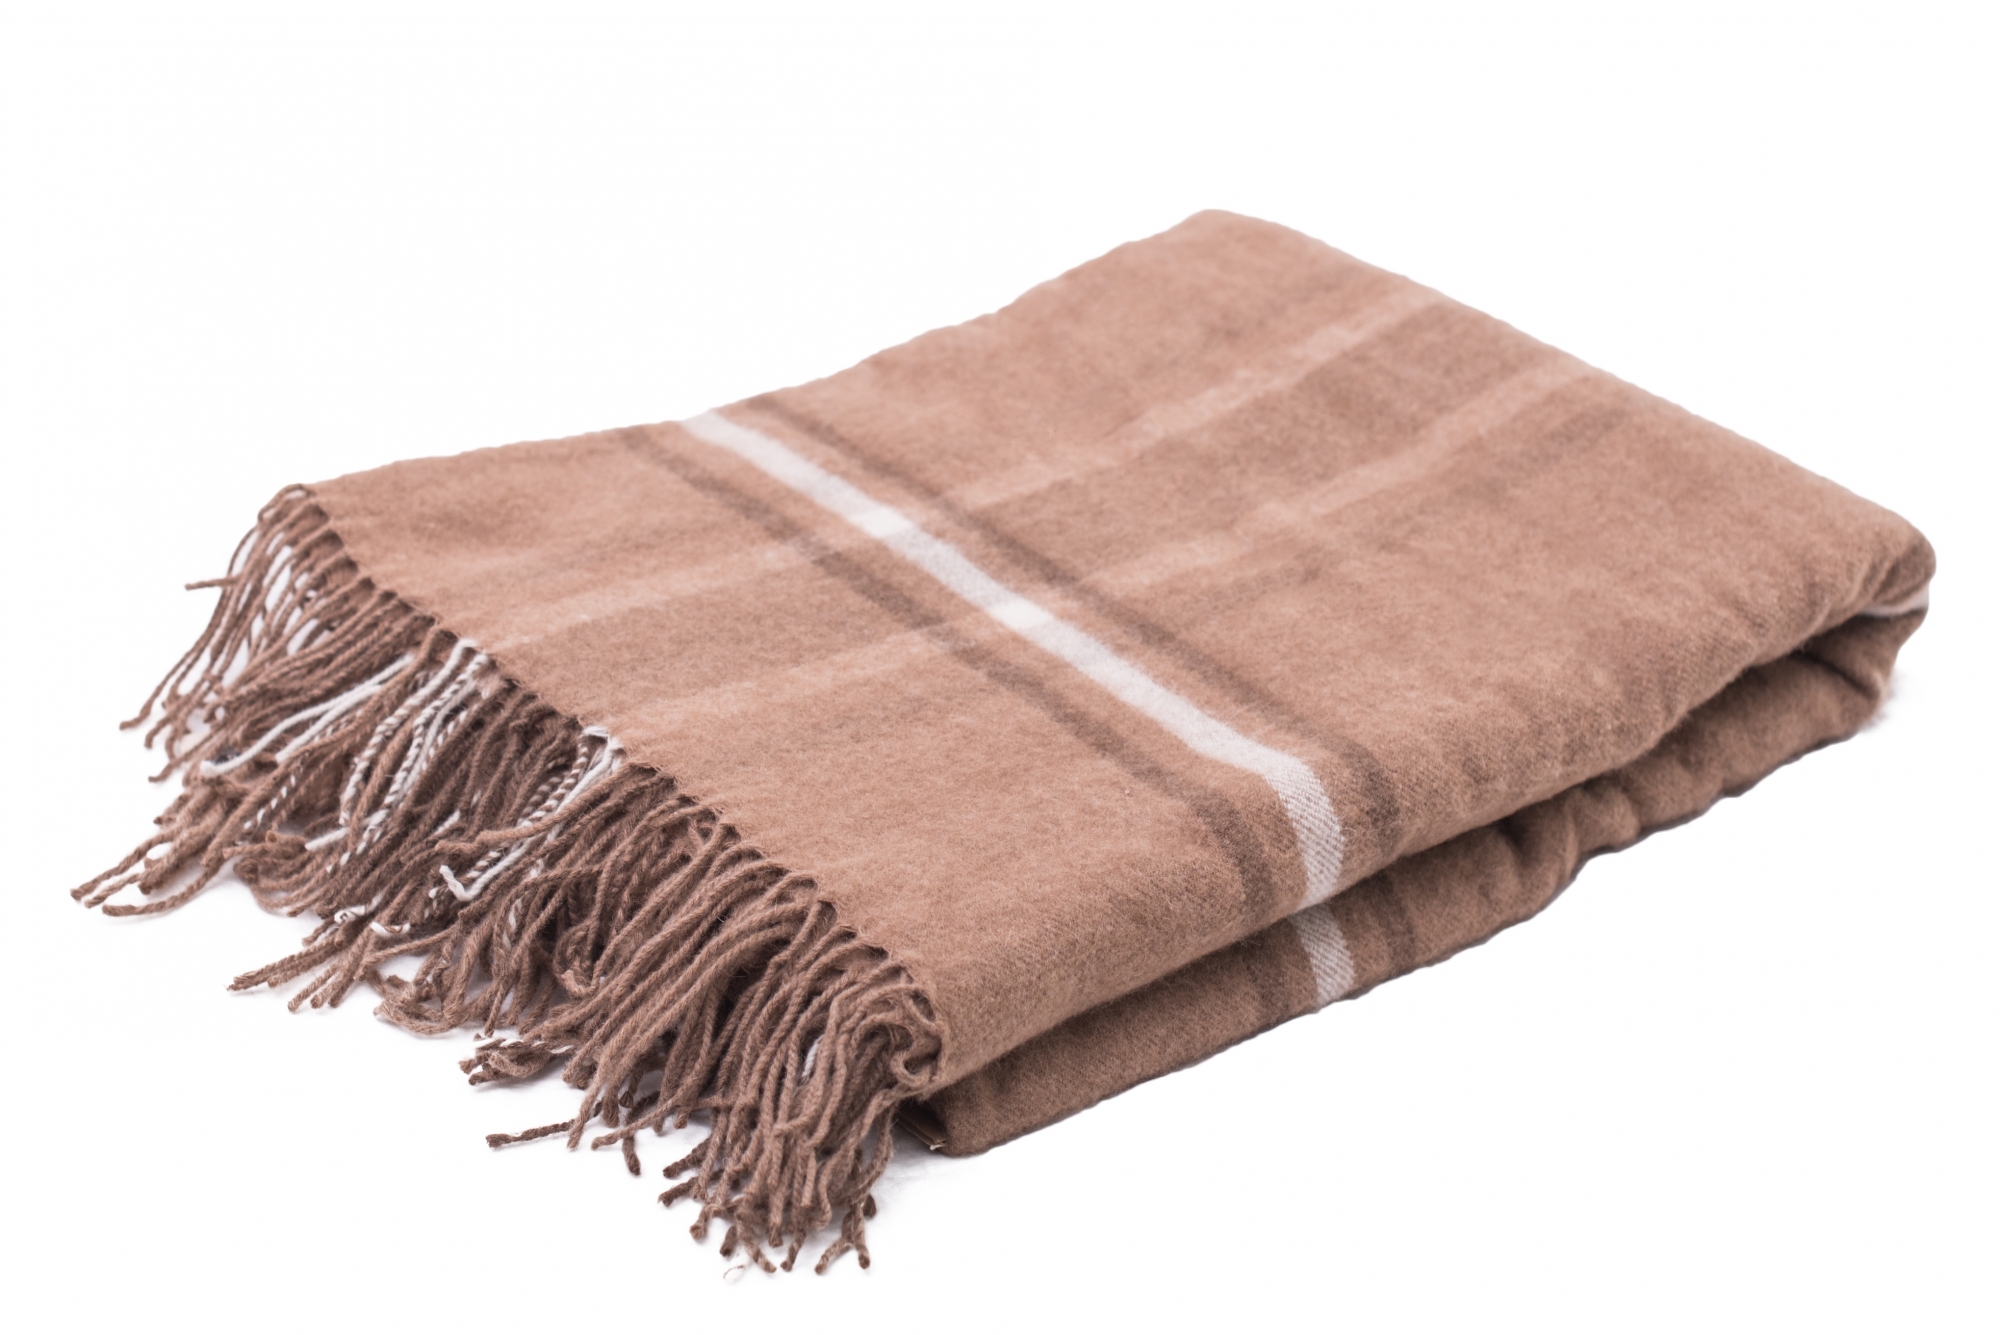 Верблюжья шерсть или овечья – какая лучше и теплее для одеяла, в чем разница?